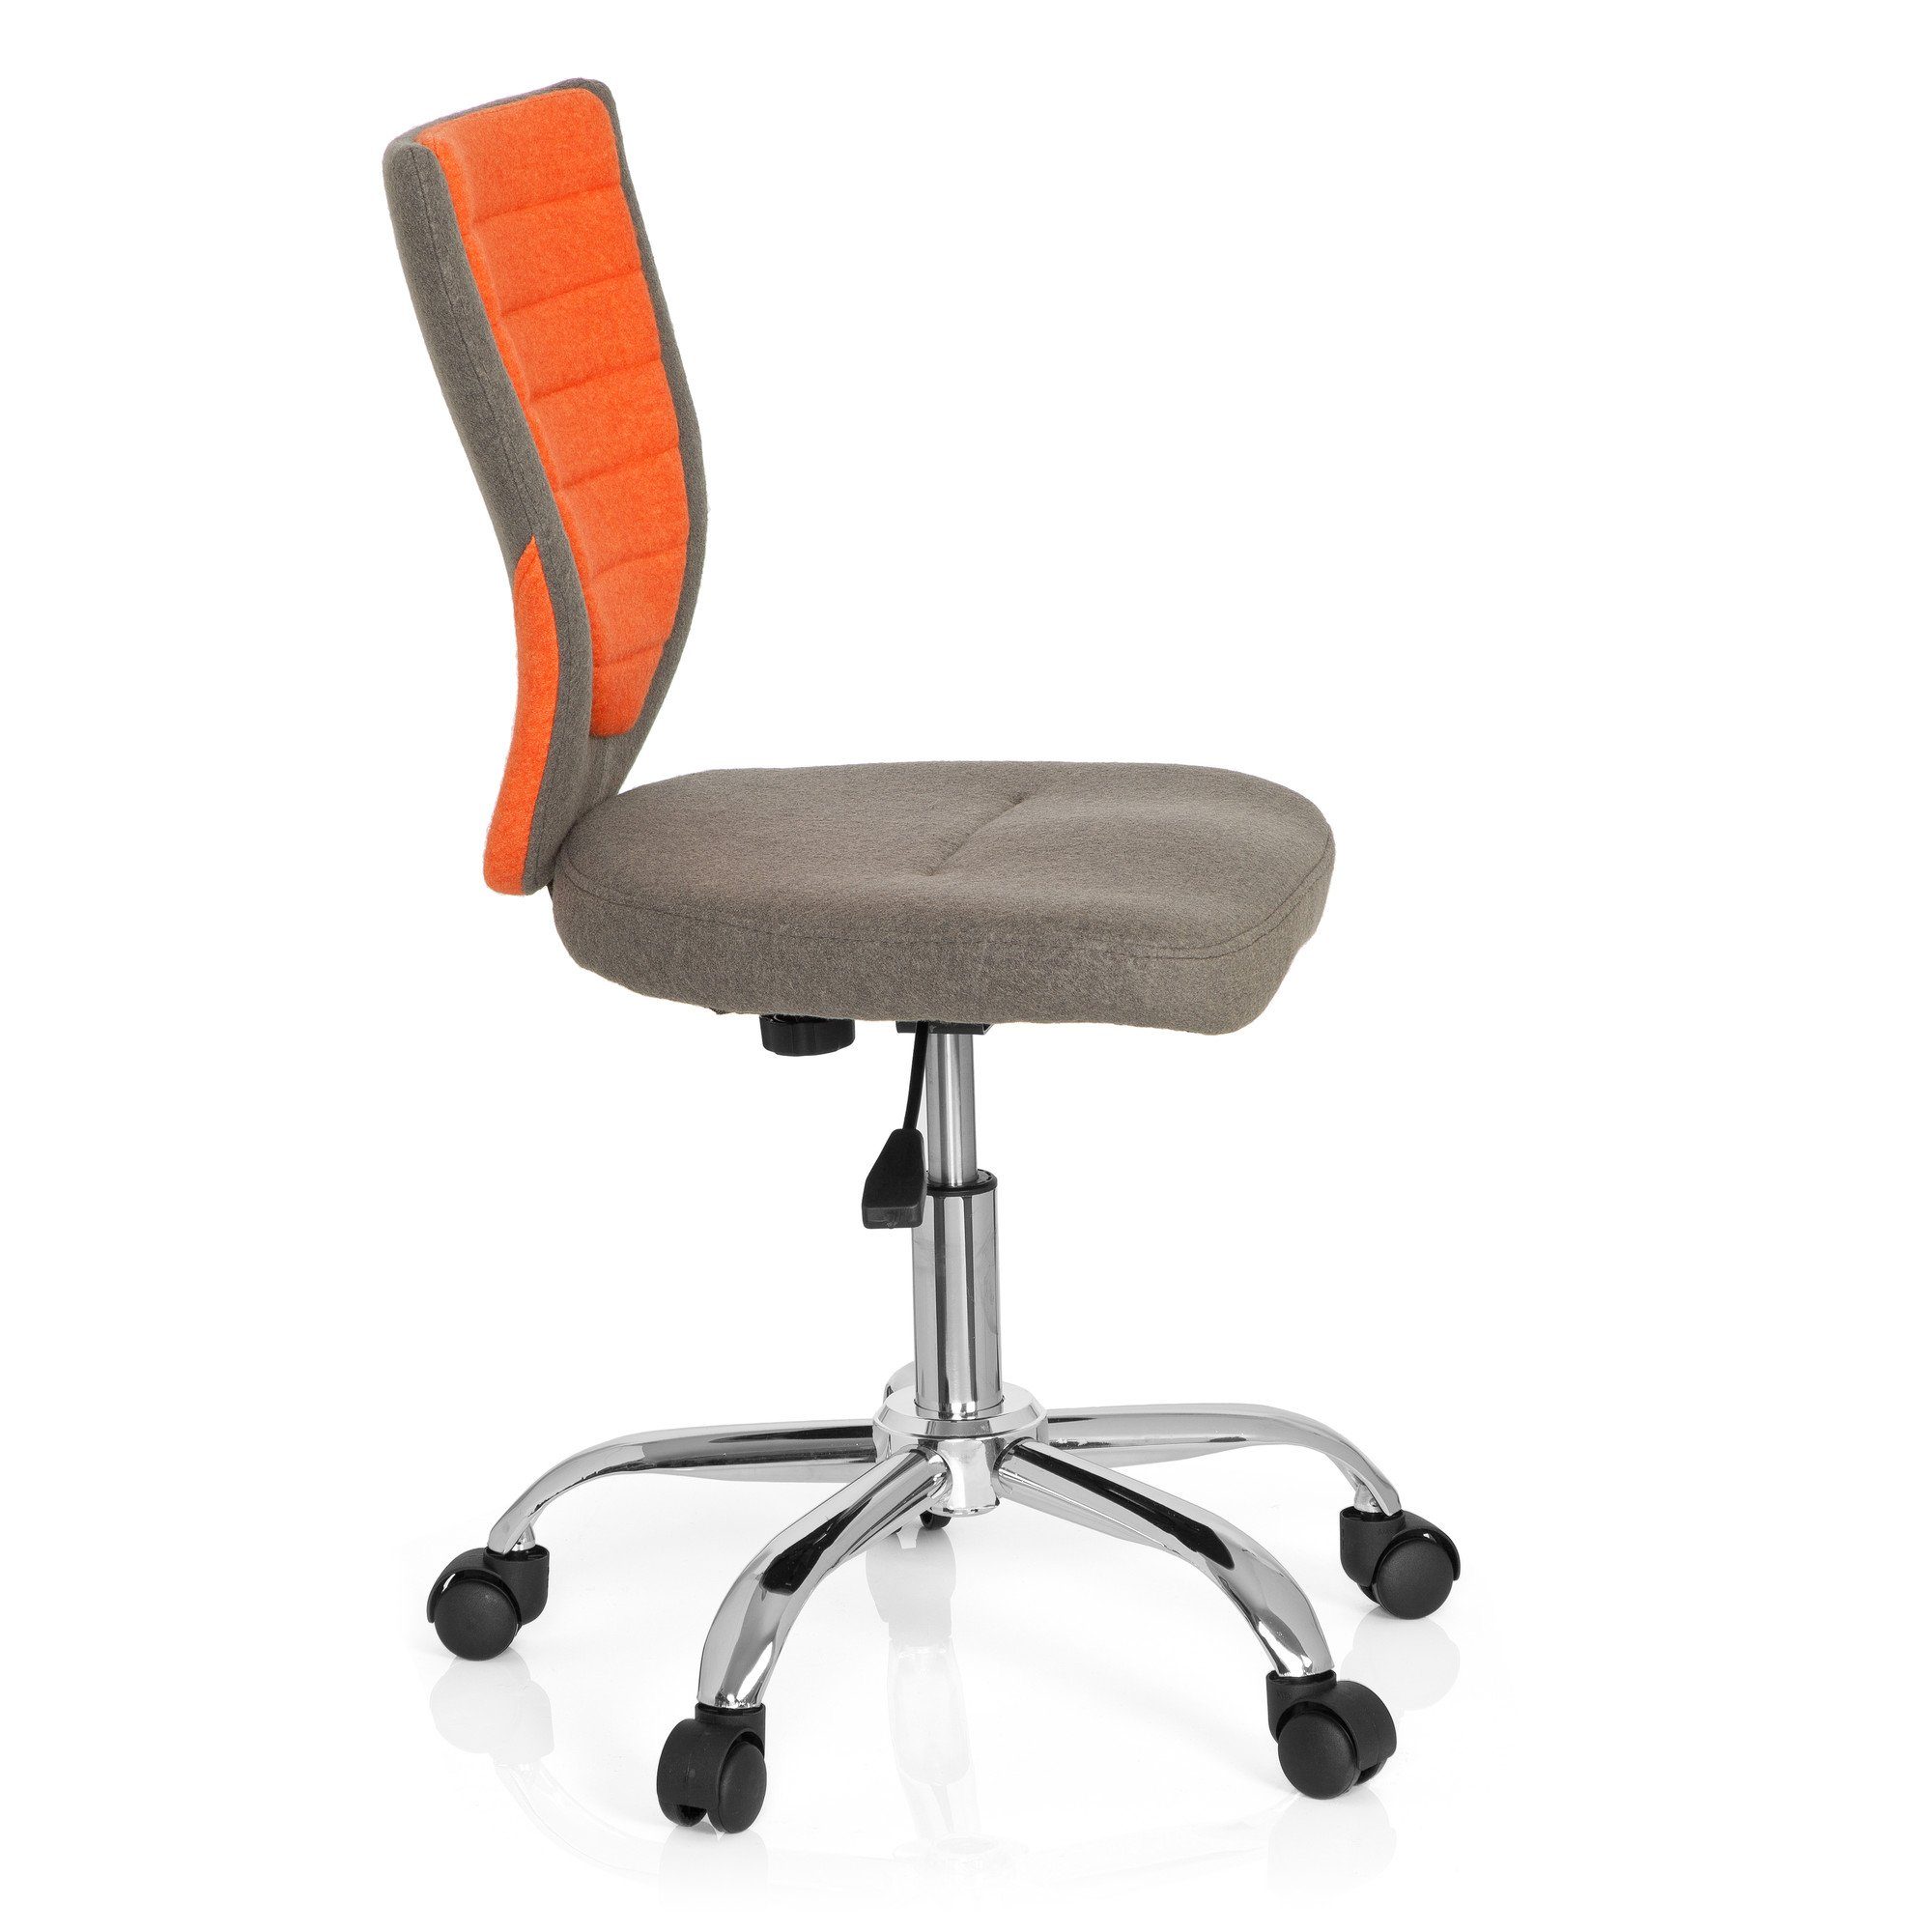 Stoff OFFICE ohne KIDDY Grau/Orange Drehstuhl hjh (1 St), COMFORT Armlehnen Kinderdrehstuhl ergonomisch mitwachsend,